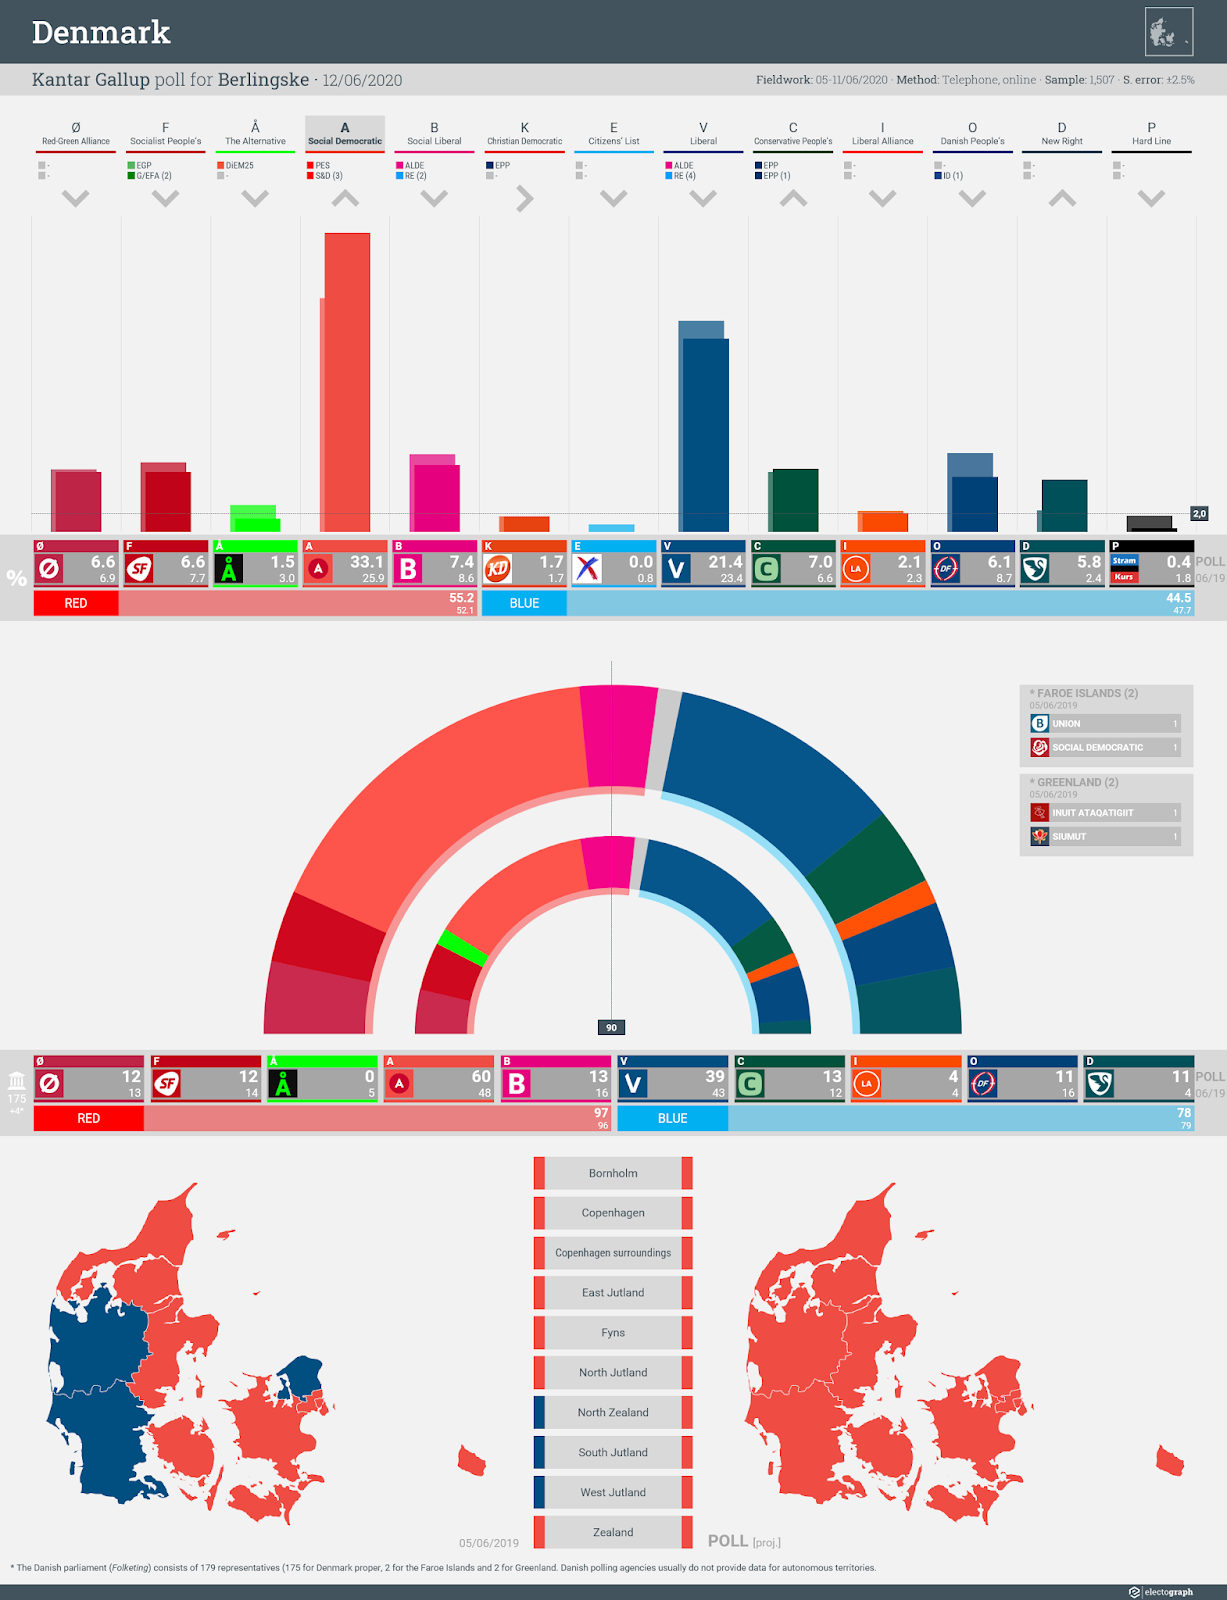 DENMARK: Kantar Gallup poll chart for Berlingske, 12 June 2020